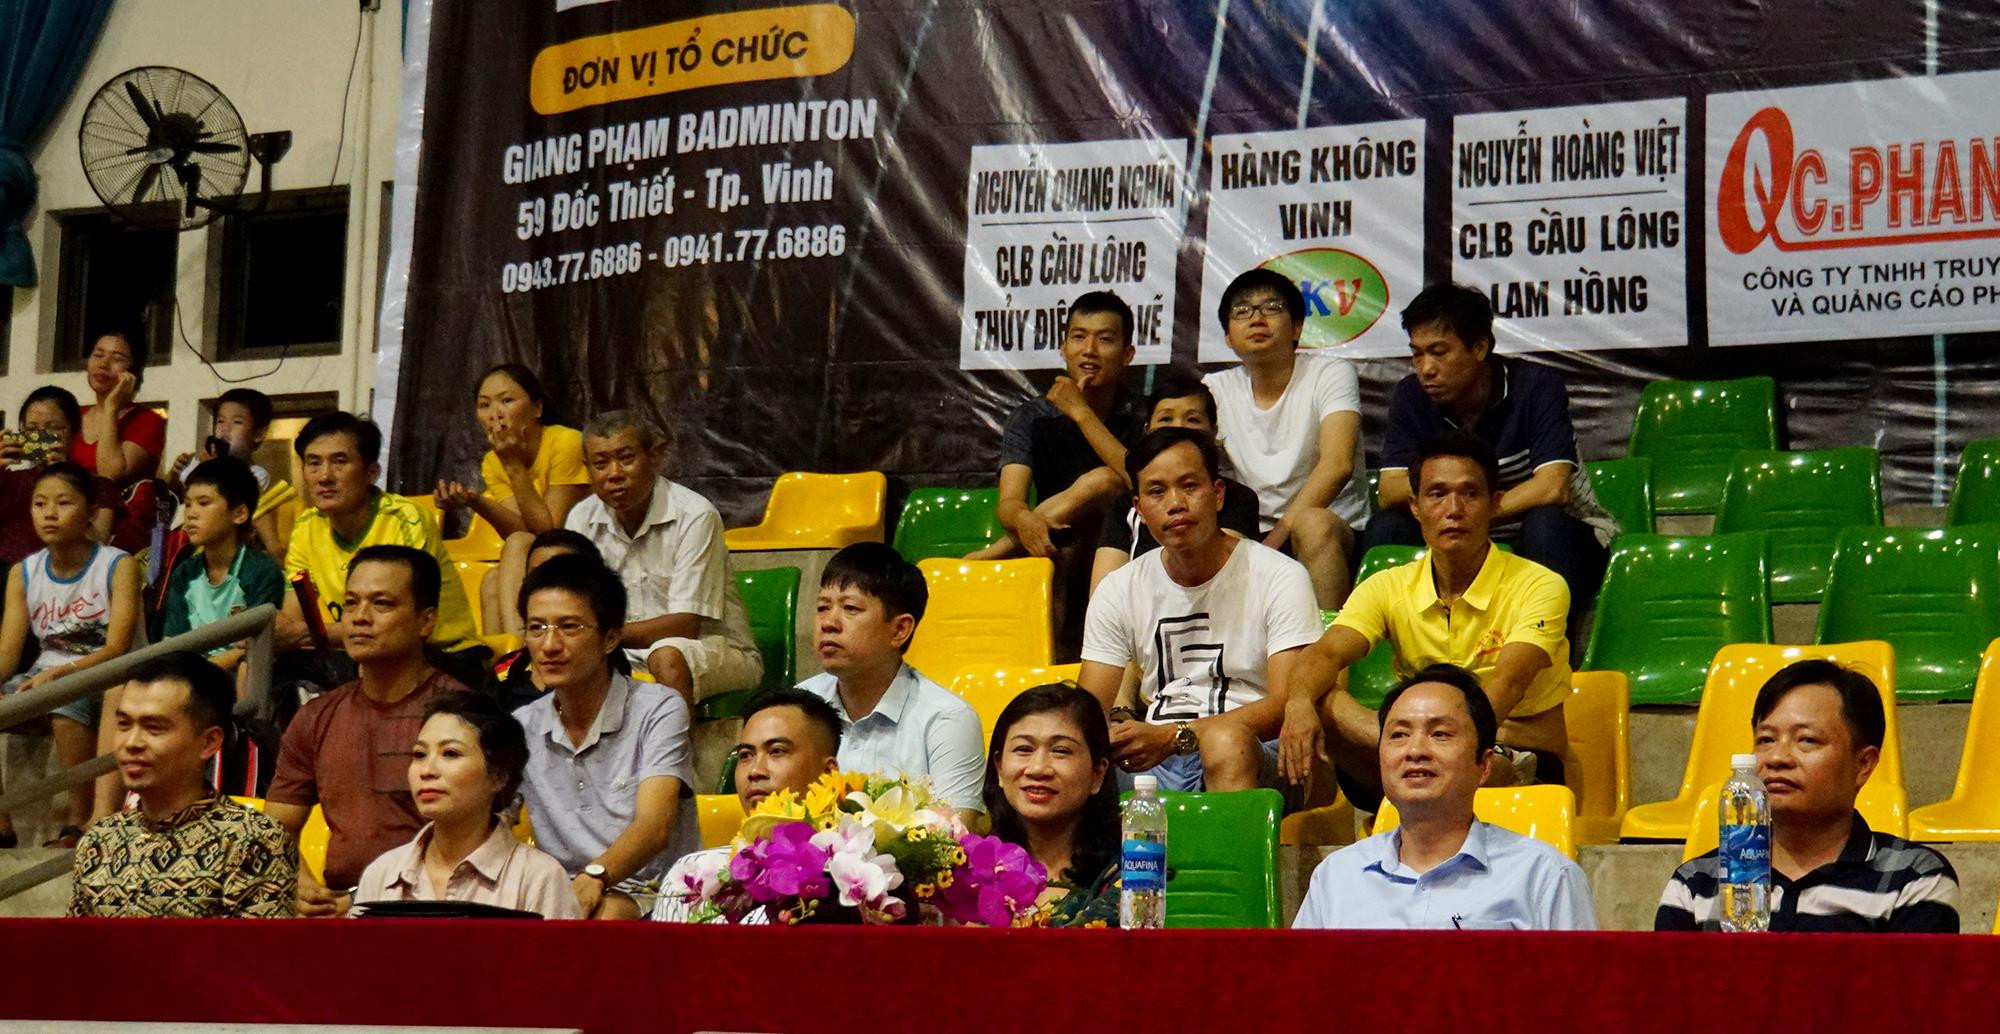 Tham dự lễ khai mạc có lãnh đạo sở Văn Hóa Và Thể Thao Nghệ An, lãnh đạo thị xã Cửa Lò cùng đại diện ban tổ chức và các nhà tài trợ